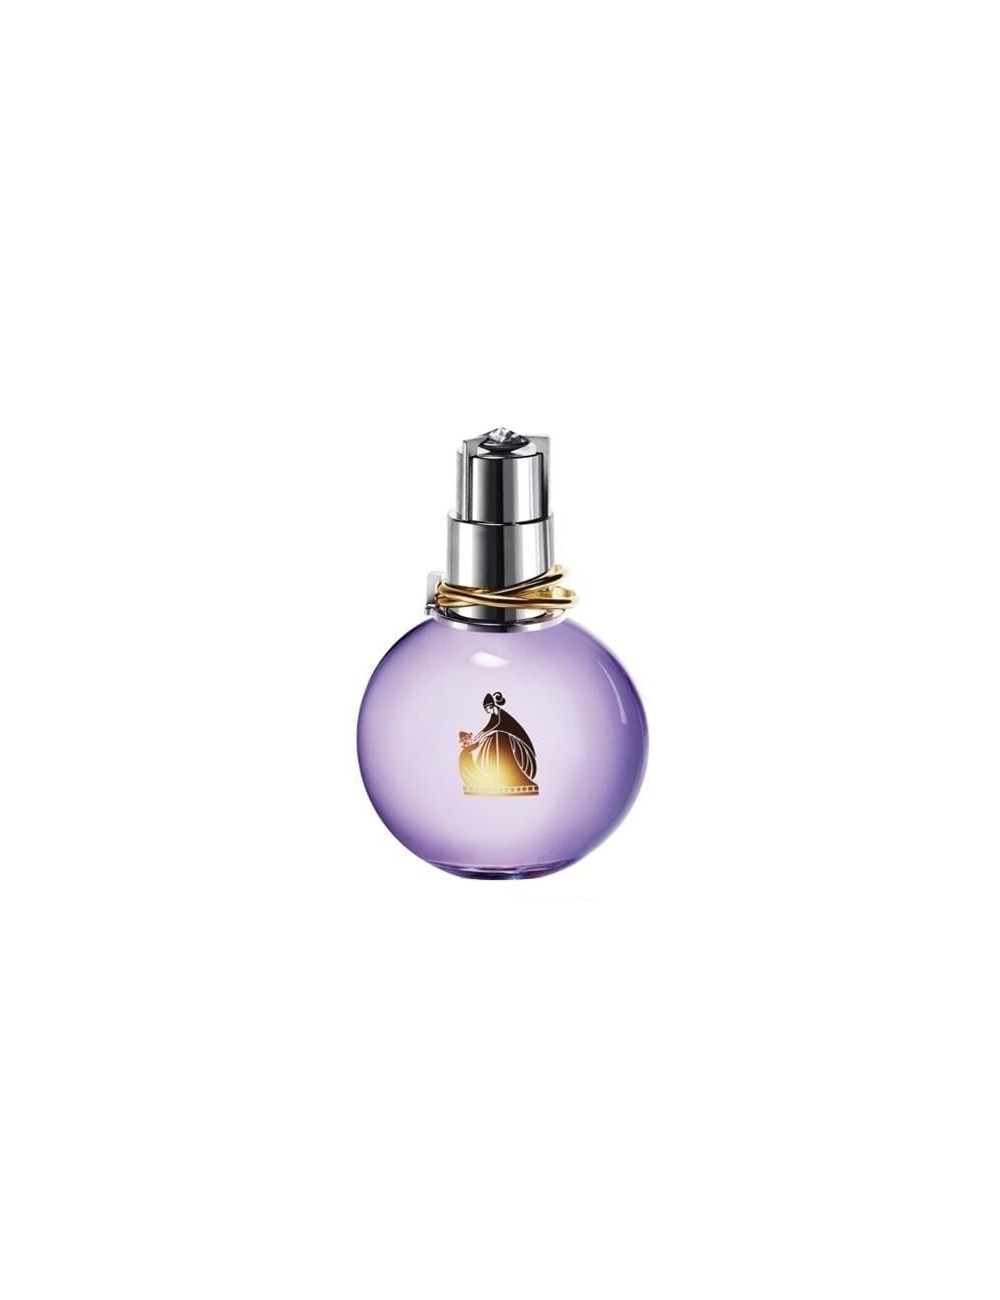 ÉCLAT D'ARPÈGE eau de parfum vaporisateur 100 ml NE27470